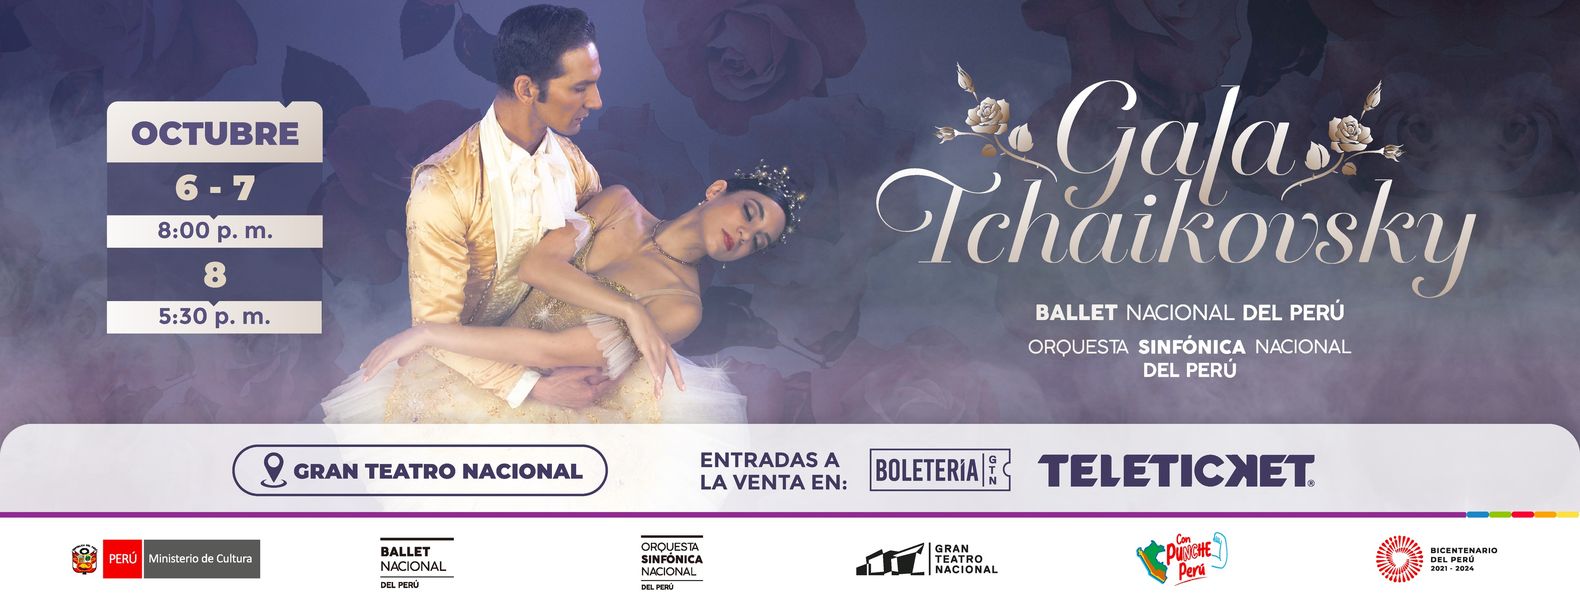 Ballet Nacional del Perú y la Orquesta Sinfónica Nacional del Perú se reúnen en la temporada “Gala Tchaikovsky”